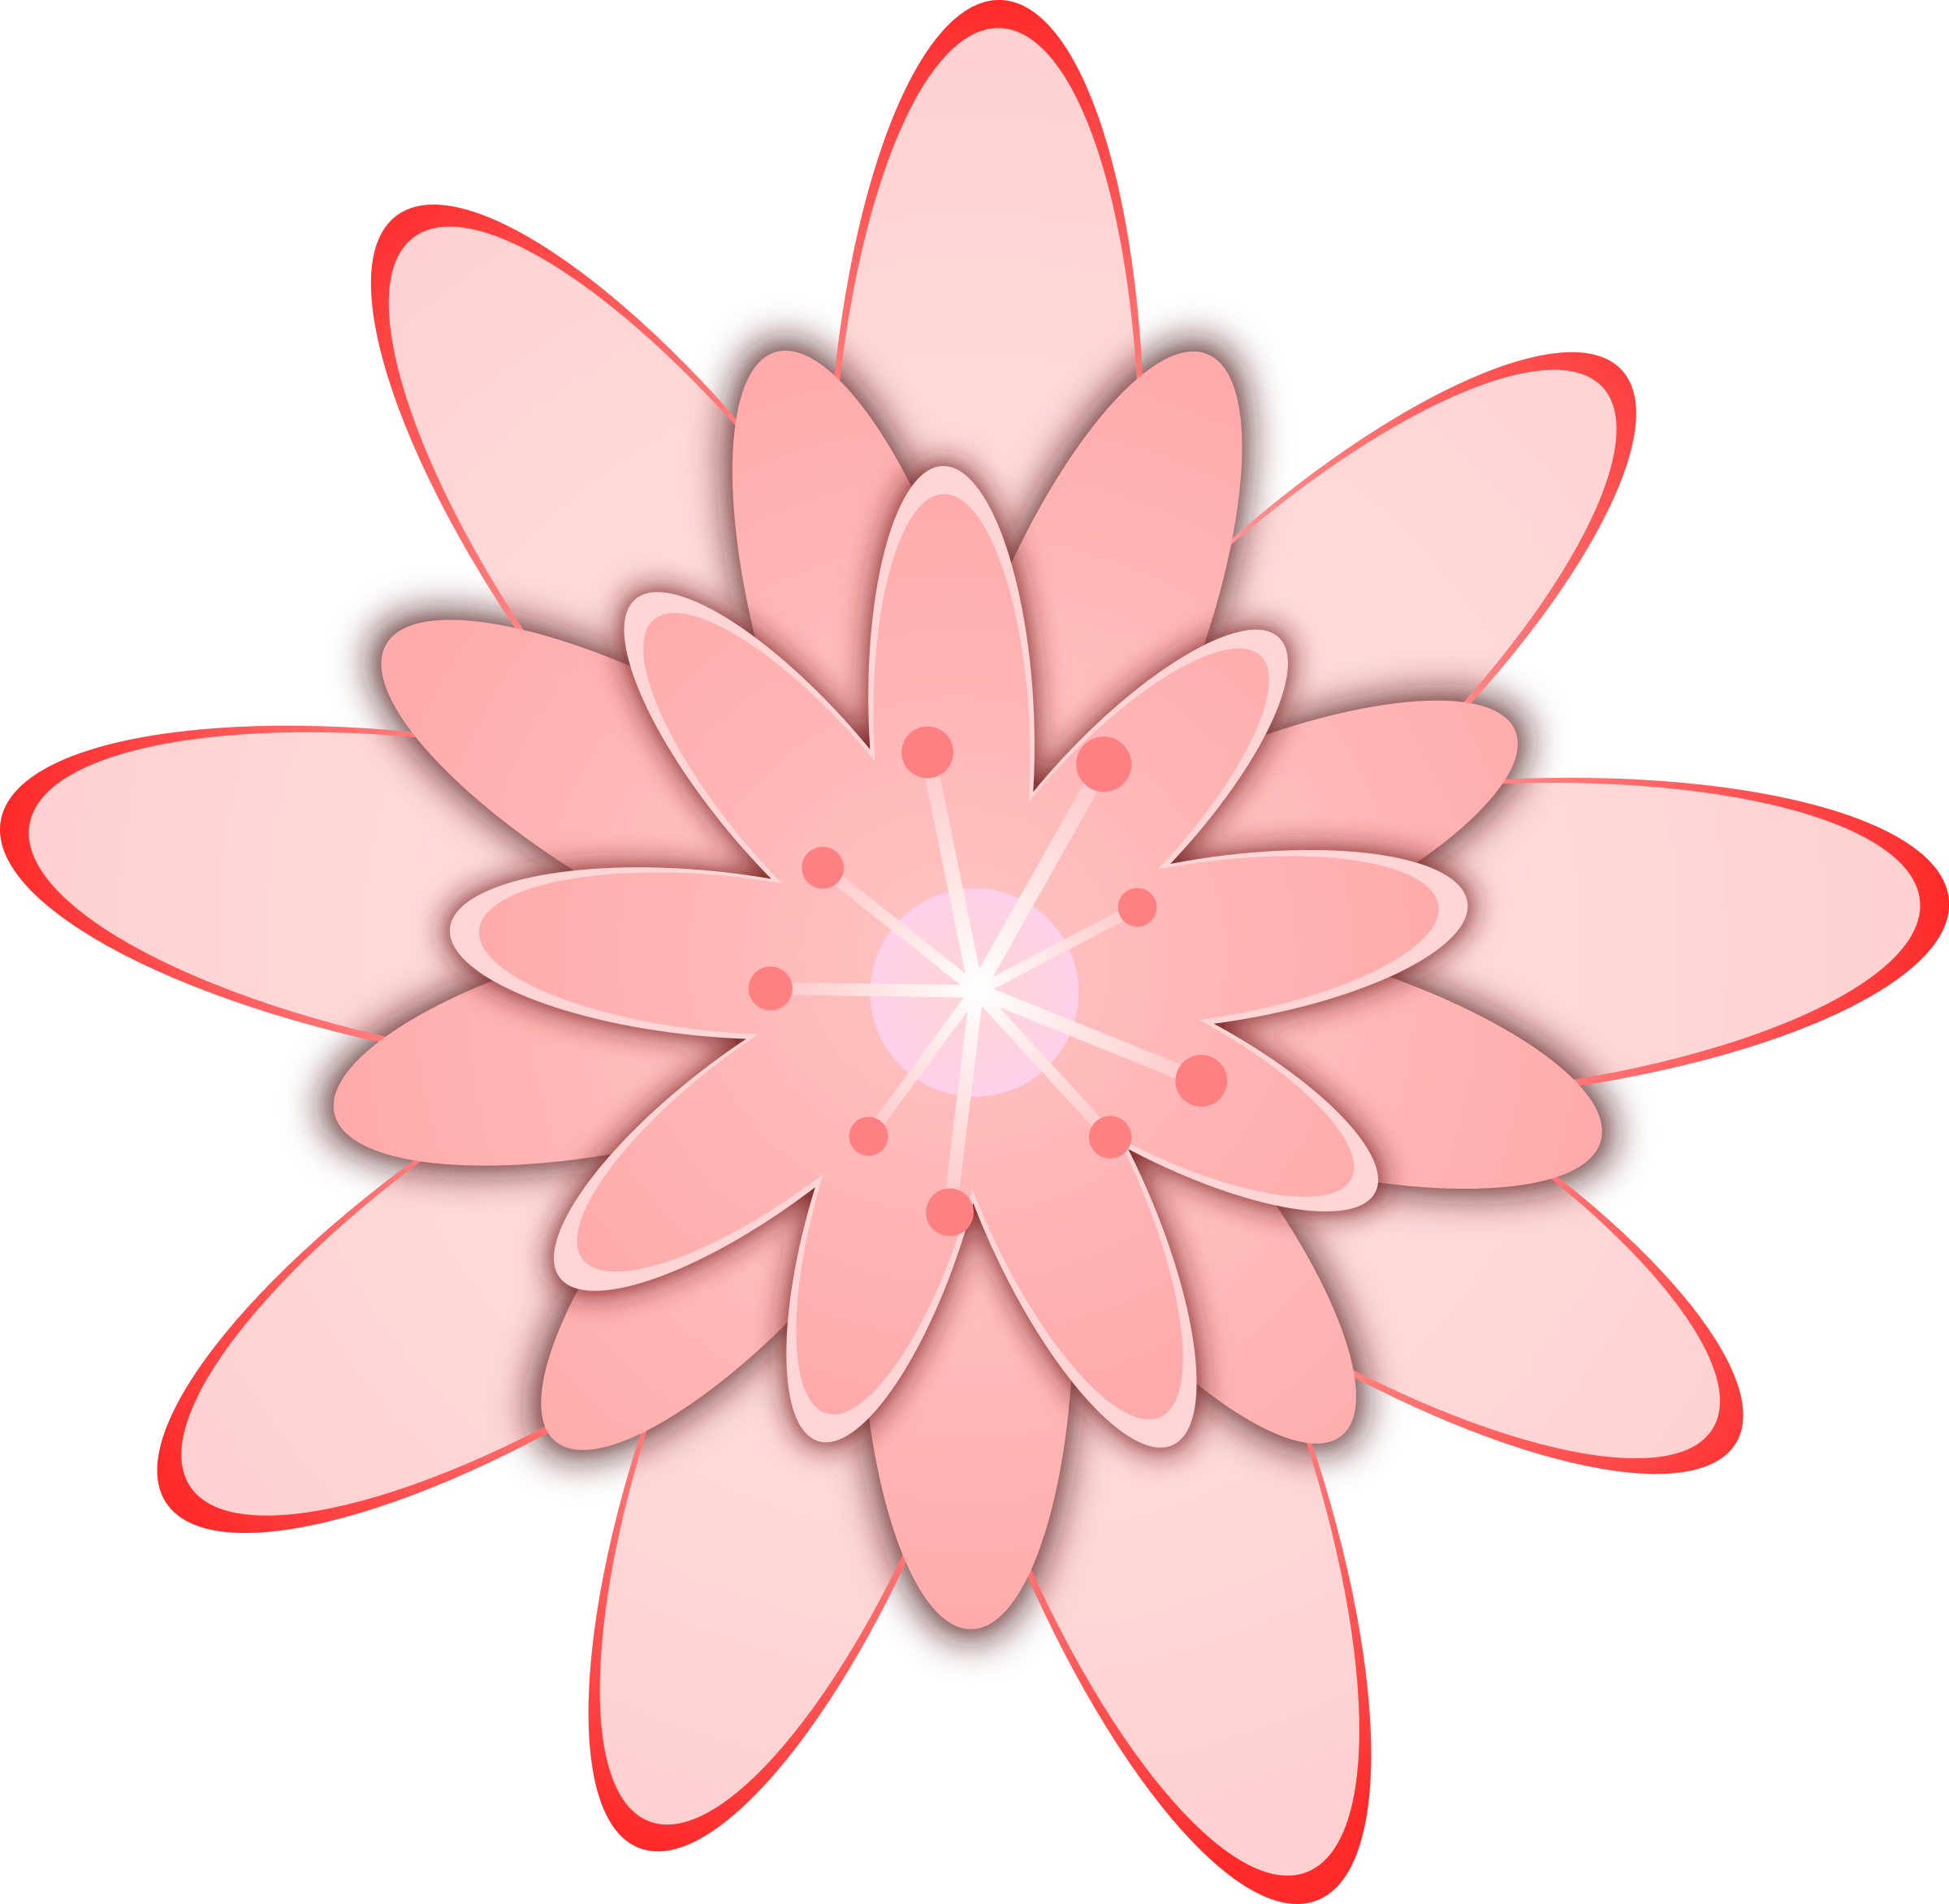 Big Image - Cactus Flower Clip Art (2400x2345)